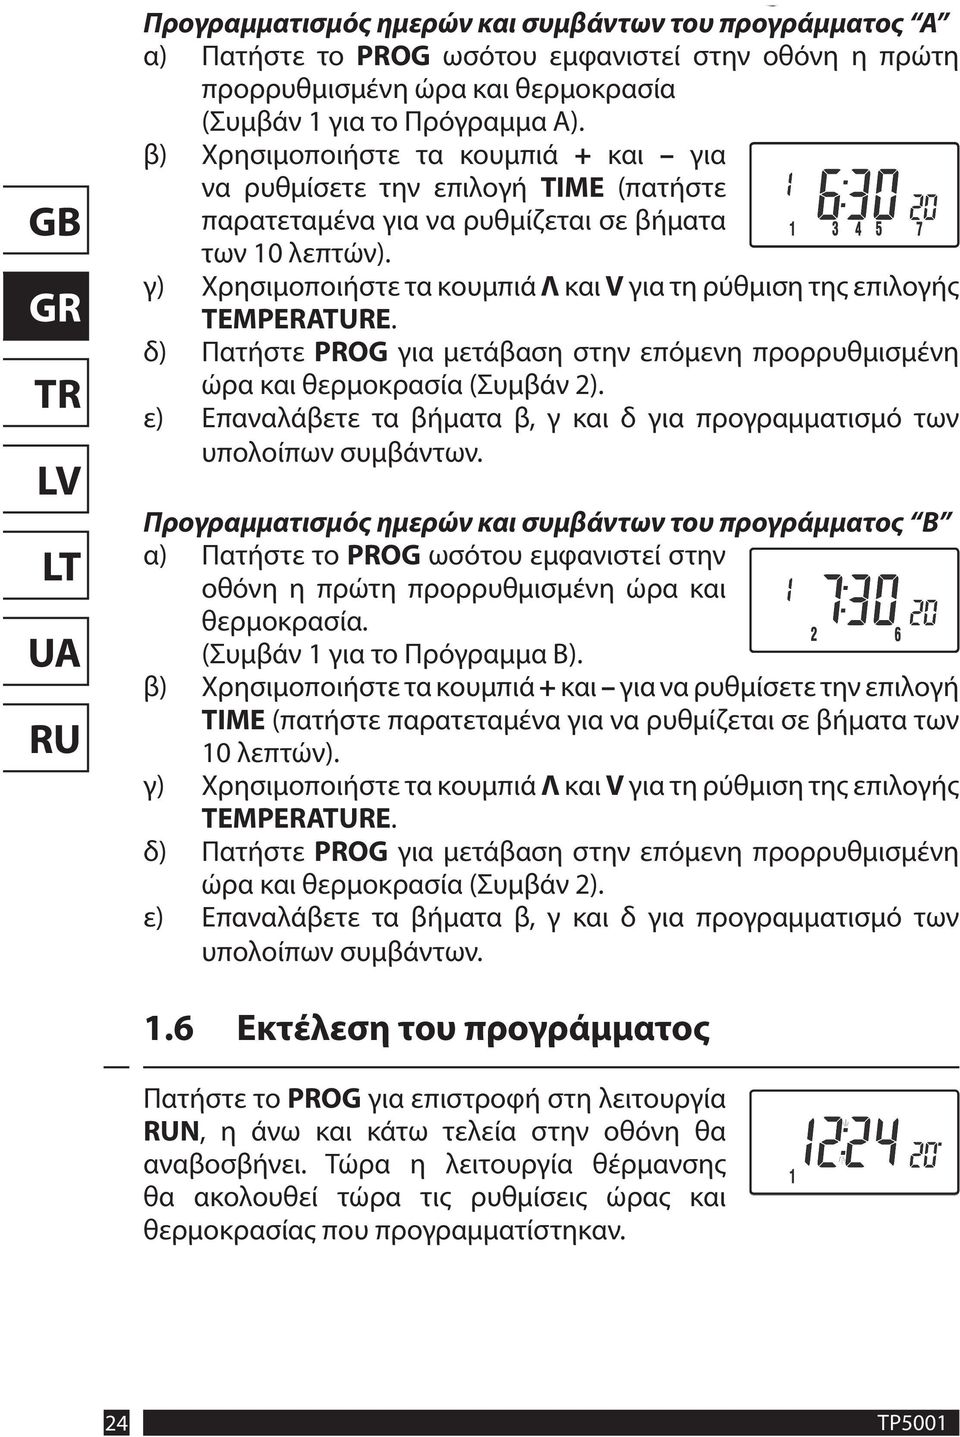 γ) Χρησιμοποιήστε τα κουμπιά Λ και V για τη ρύθμιση της επιλογής TEMPERATURE. δ) Πατήστε PROG για μετάβαση στην επόμενη προρρυθμισμένη ώρα και θερμοκρασία (Συμβάν 2).